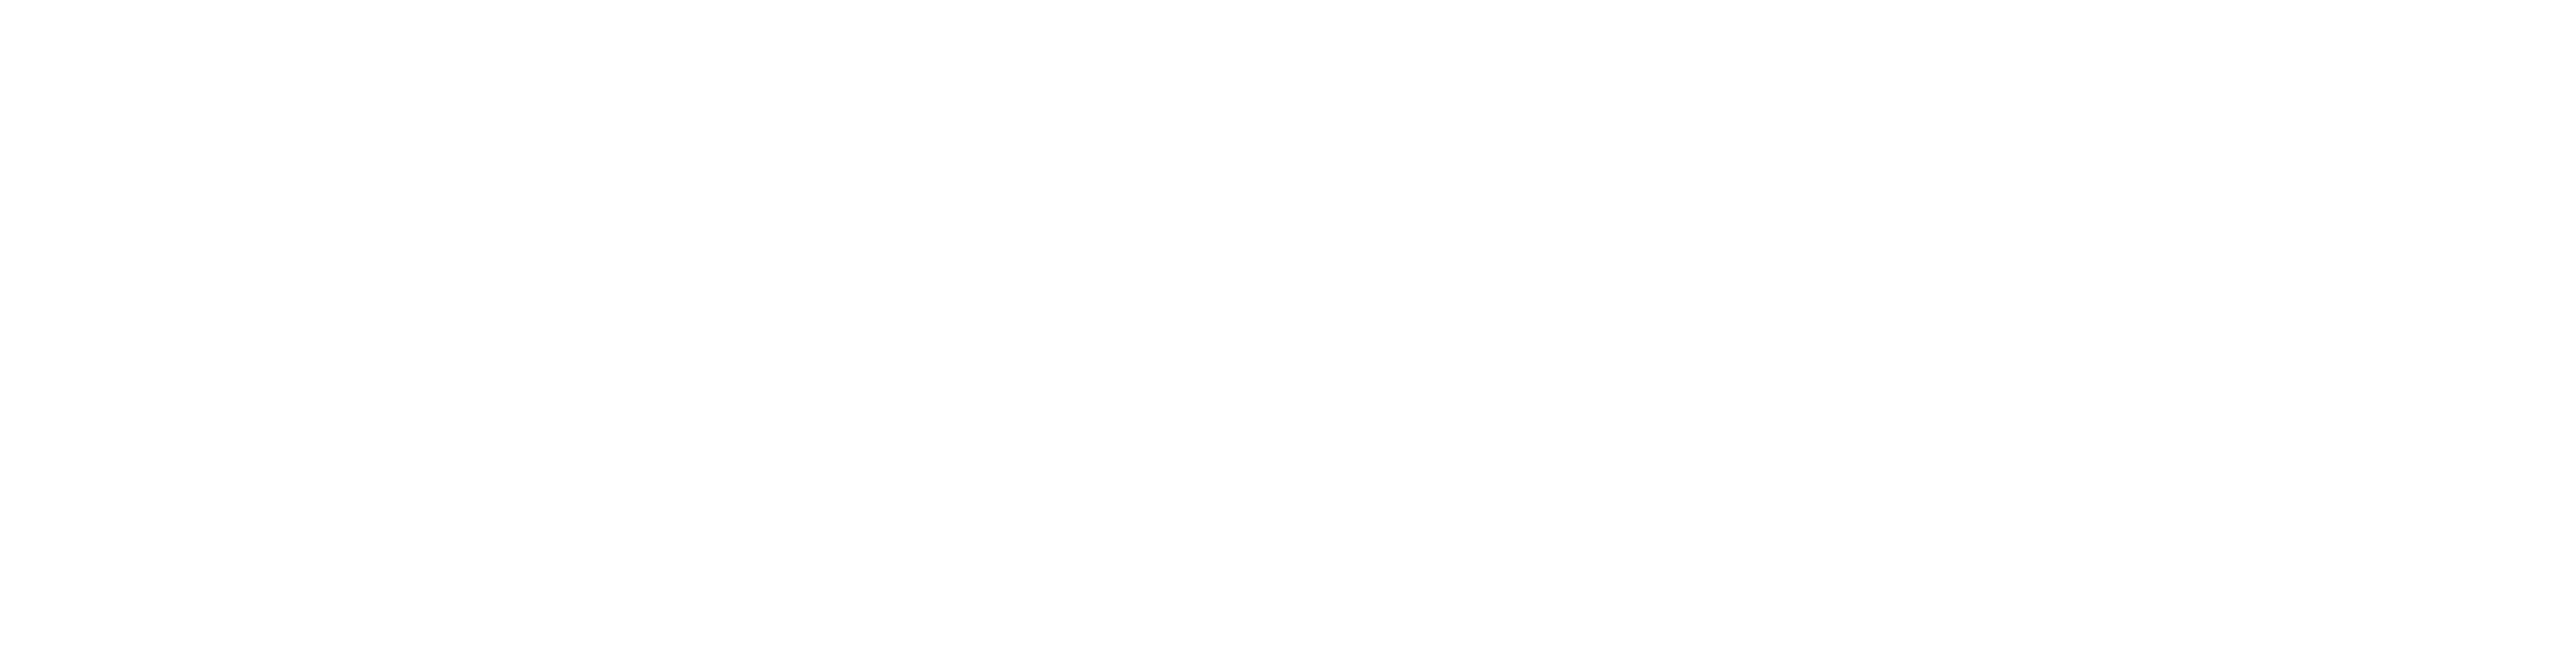 SDS2 Solid Steel Competition, Awards, SDS2 Steel Detailing Software